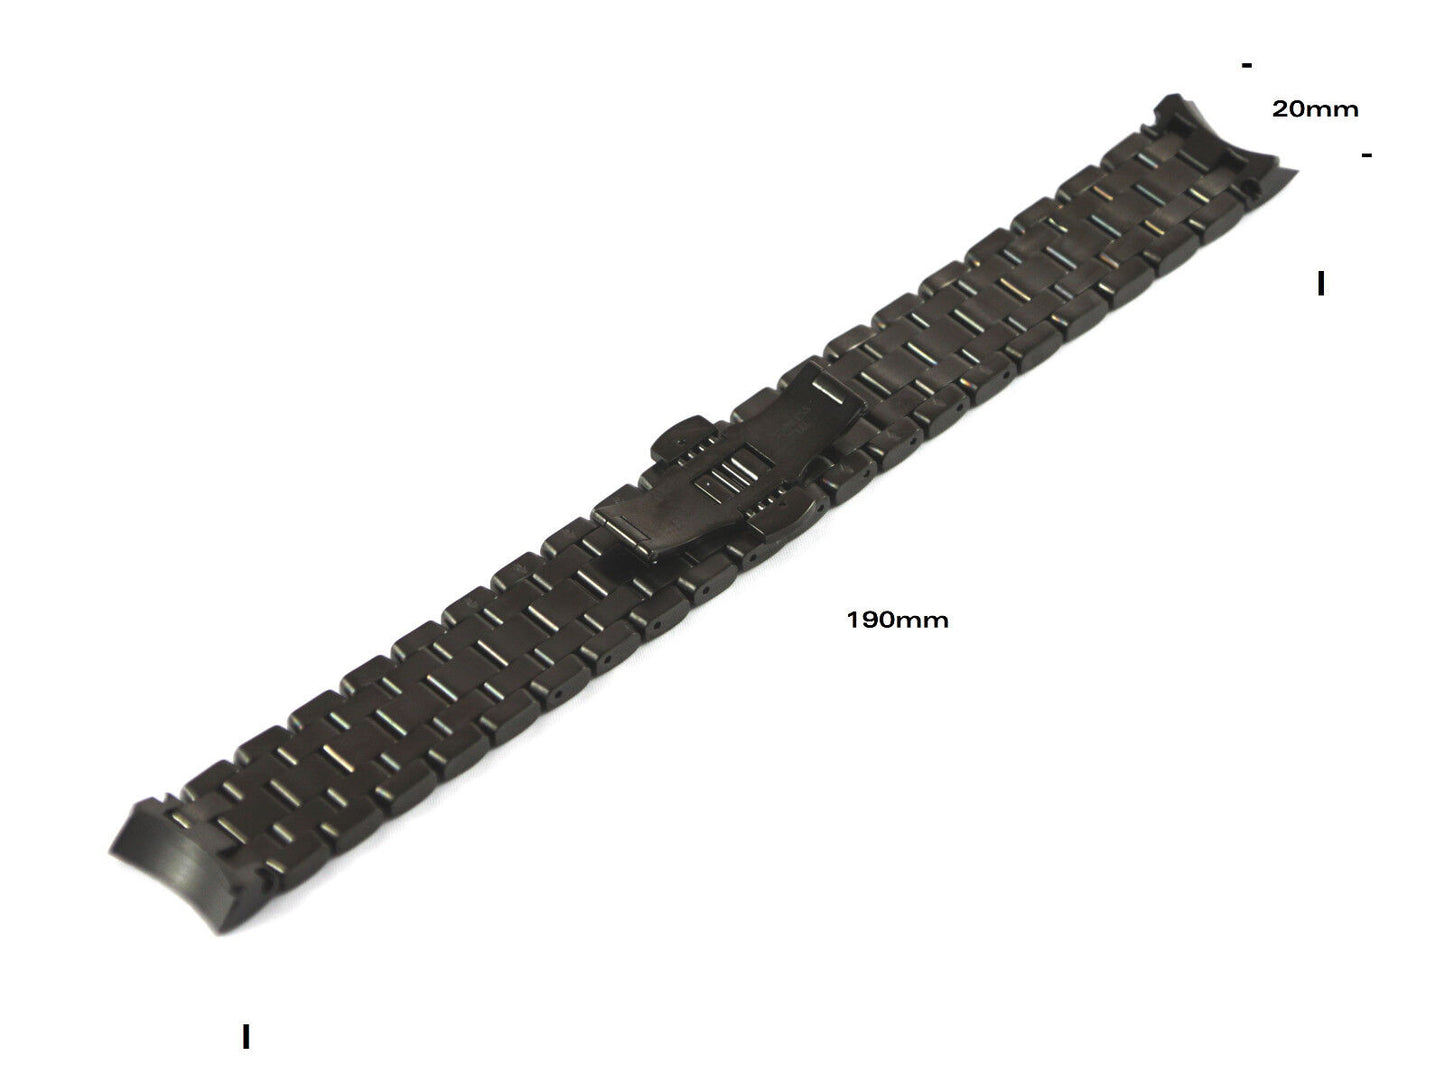 Timex TX Ersatzarmband T3B921 für alle Modelle der TX 730 Serie - Ersatzband